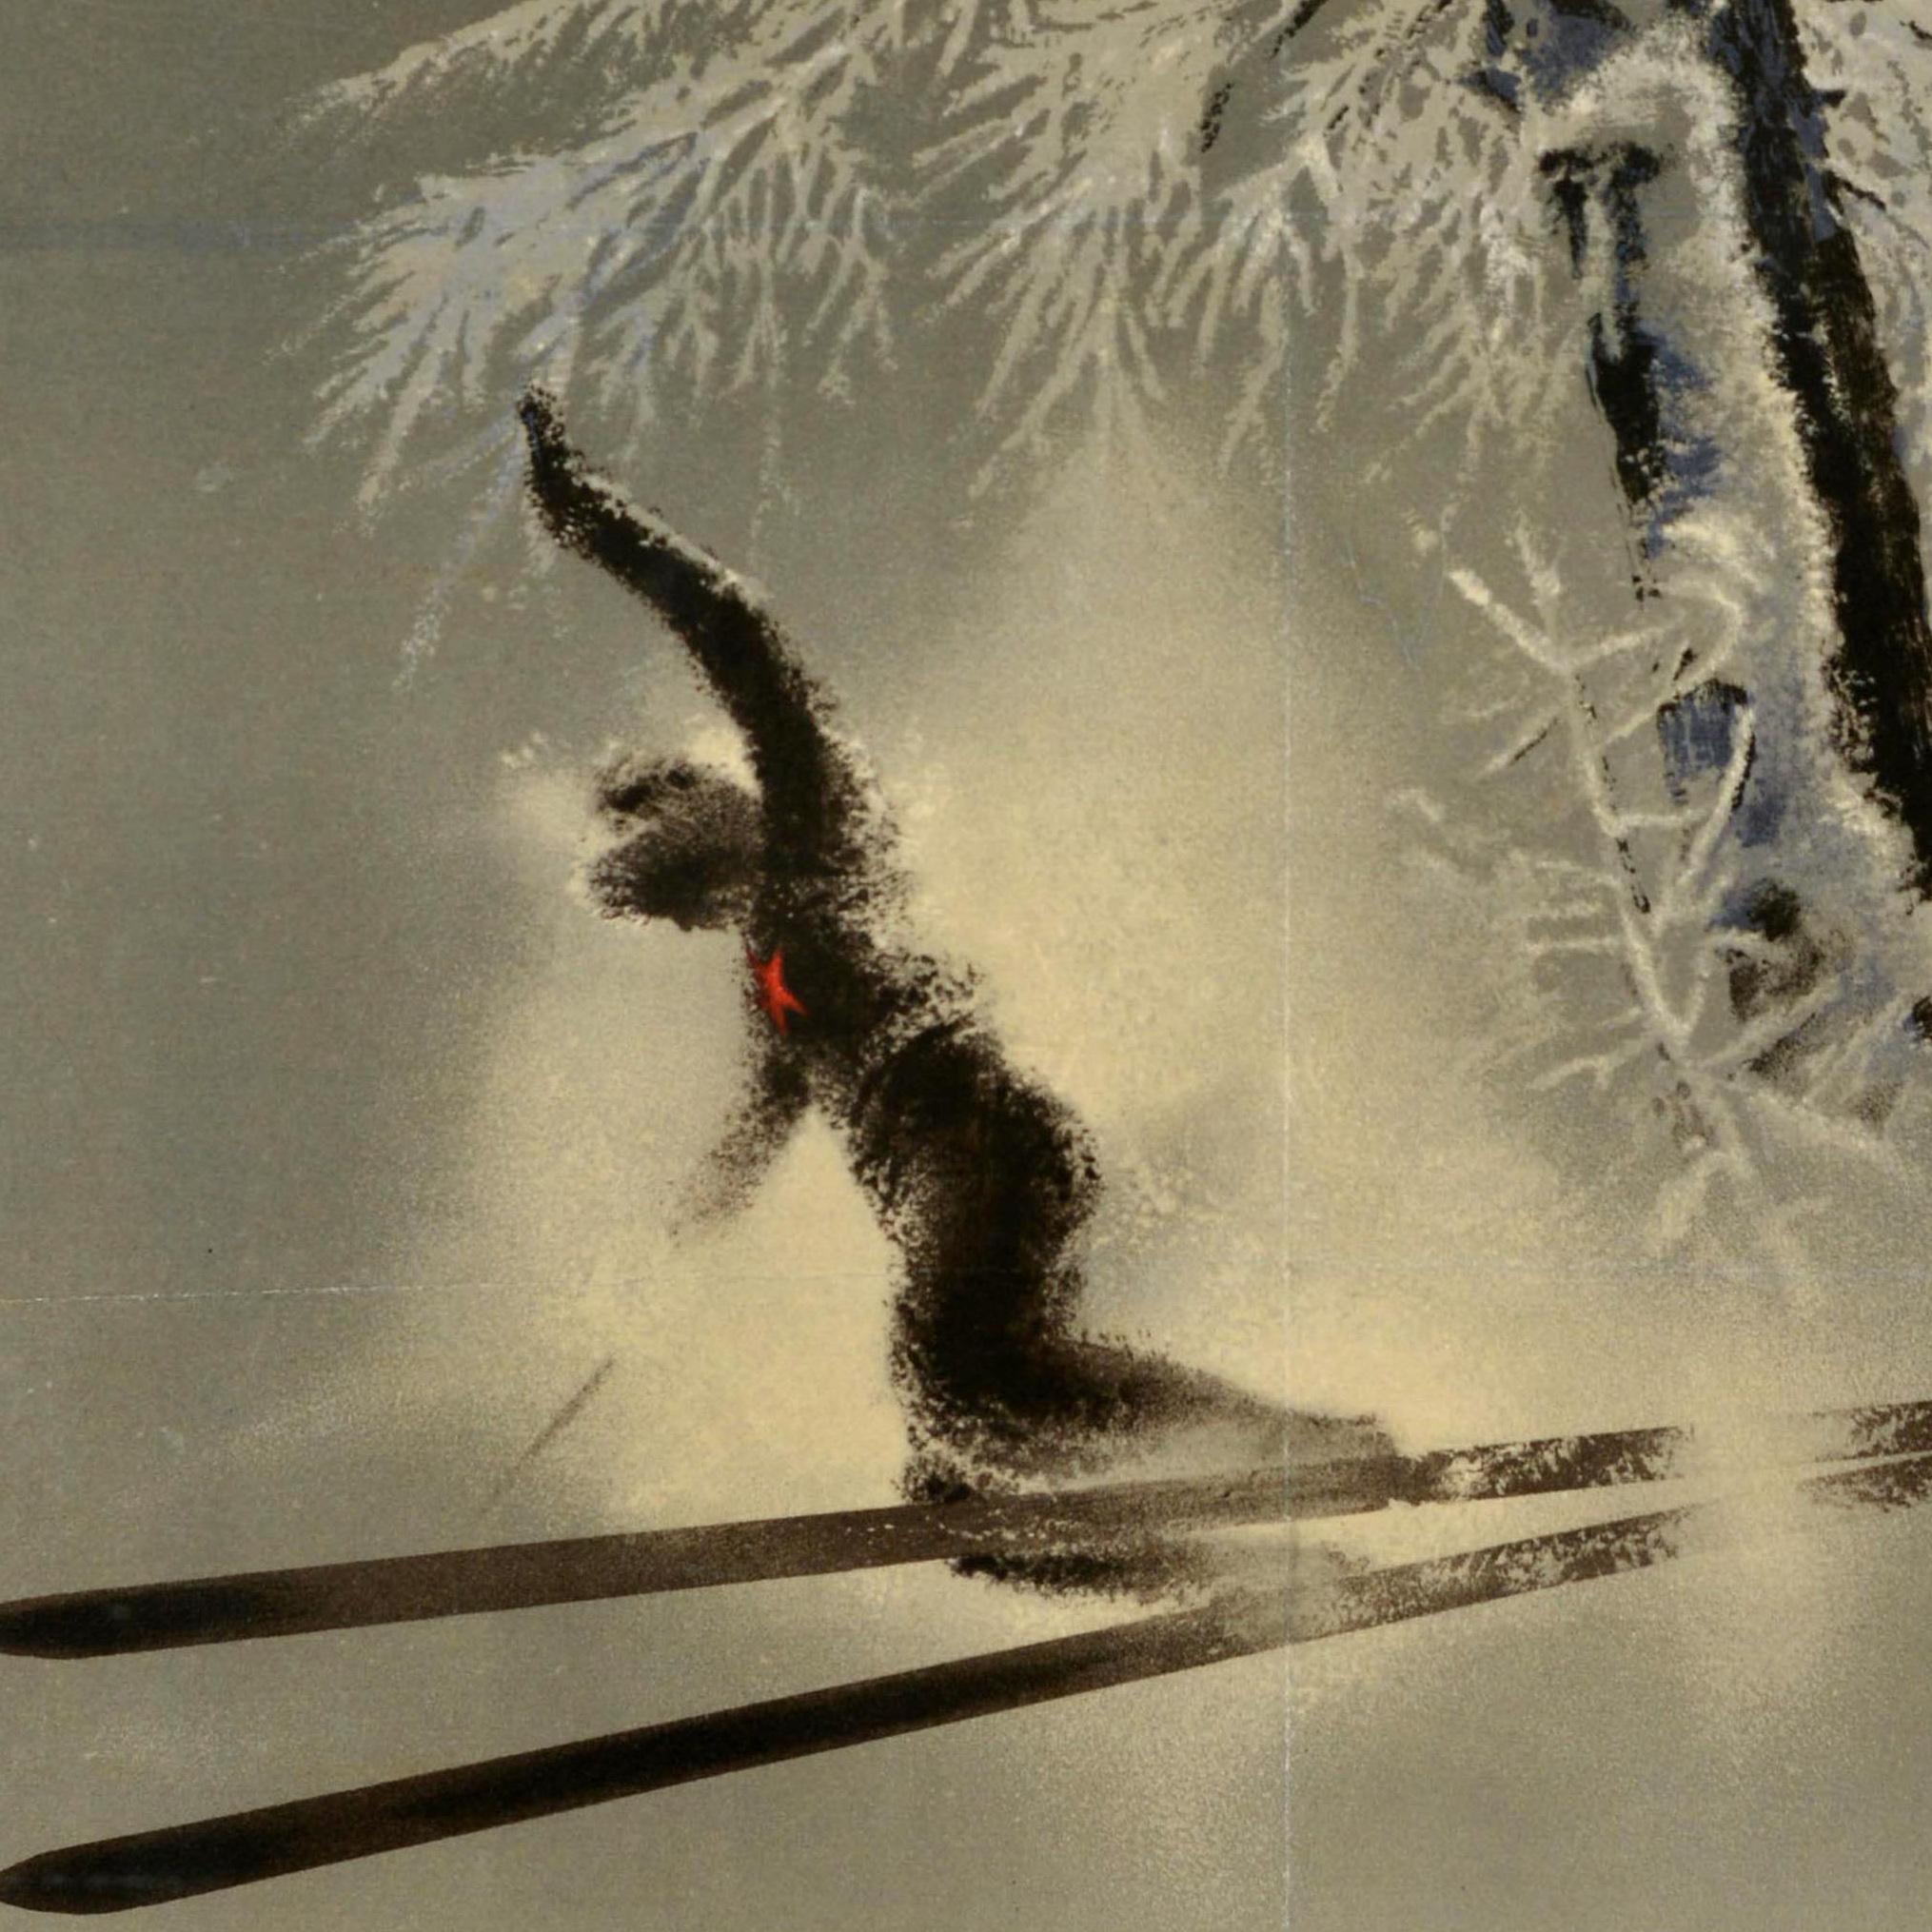 Affiche de voyage soviétique originale d'Intourist - Winter in the USSR - présentant une illustration du célèbre artiste Nikolai Zhukov (1908-1973) de skieurs dévalant une pente à toute vitesse, passant devant un arbre couvert de neige avec des